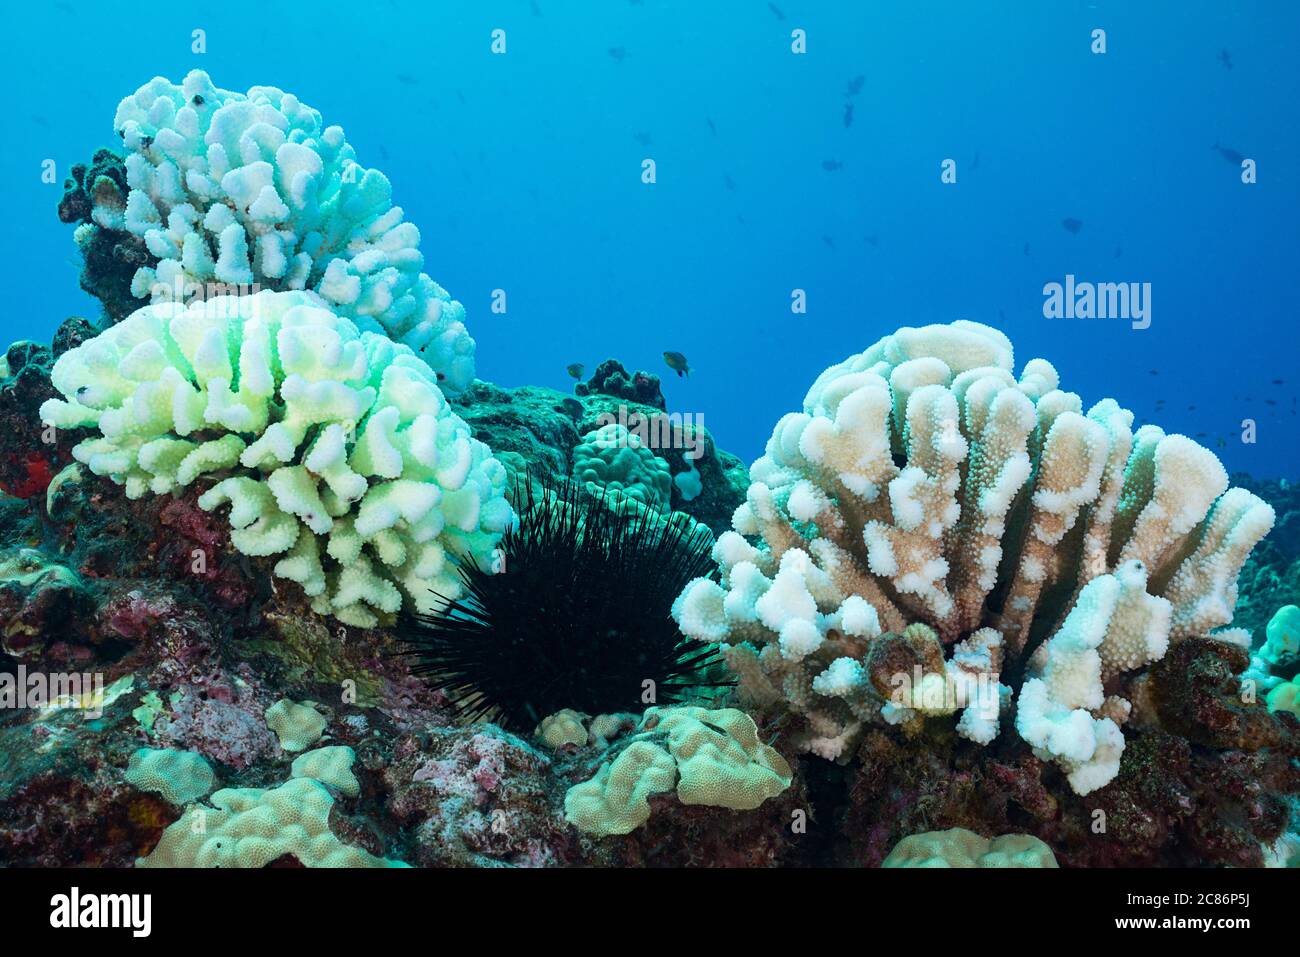 Coraux de chou-fleur, Pocillopora meandrina, blanchis par de l'eau de mer chaude pendant l'événement El Nino de l'été 2015, montrant 3 étapes de blanchiment, Kona, Hawaii Banque D'Images